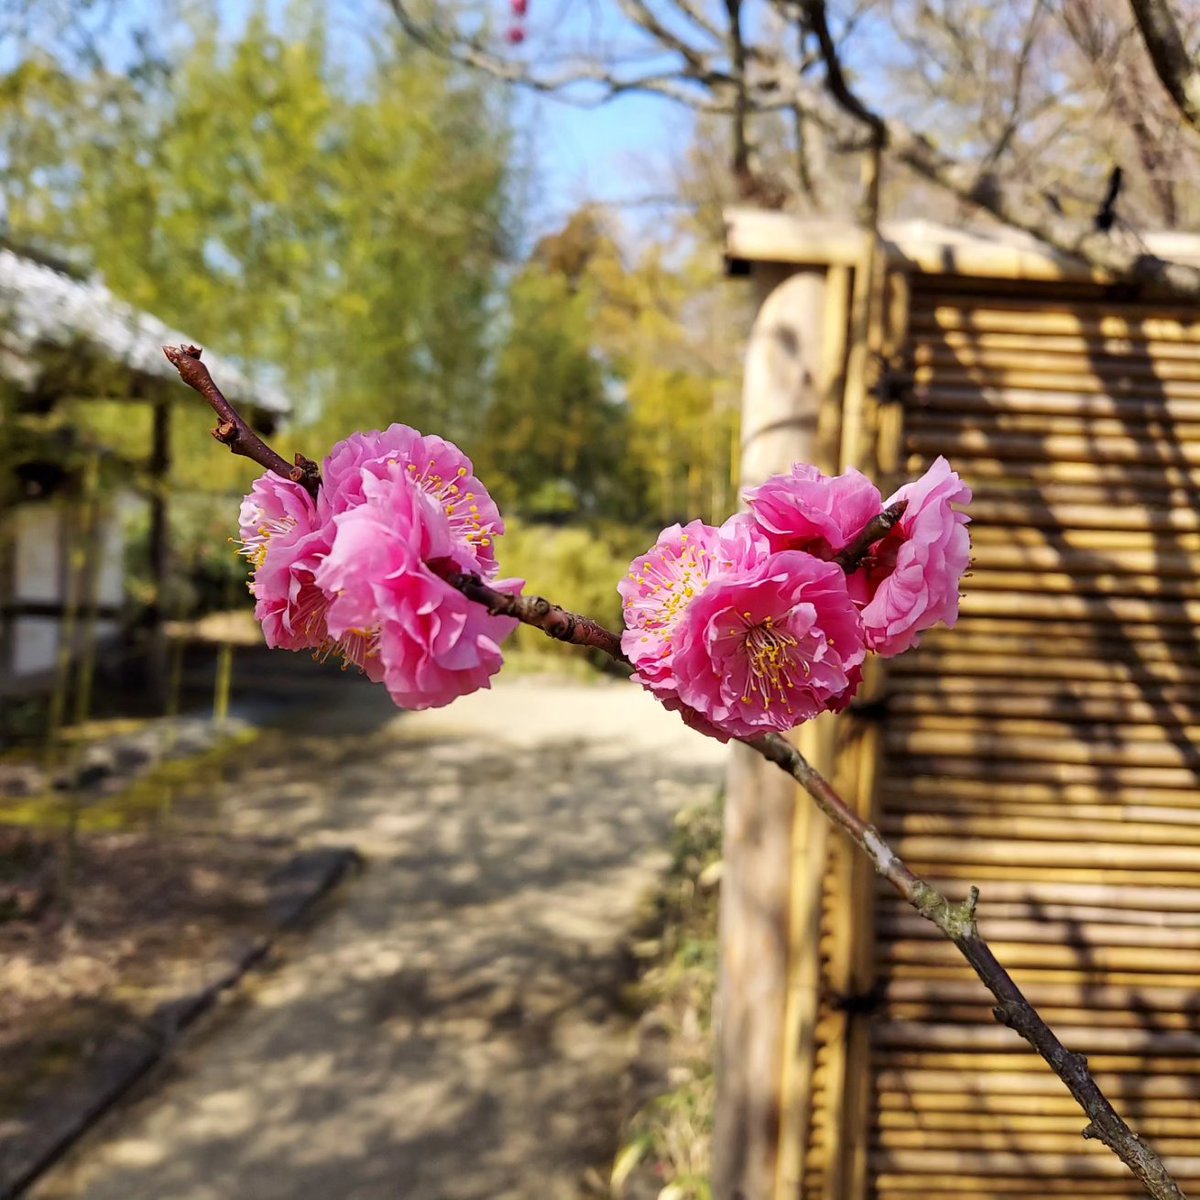 竹の庭にある紅梅です。 青空とのコントラストが綺麗でした。 他の梅よりも開花が遅く、まるっとした愛らしい梅の花を現在も楽しみいただけます。 #好古園 #姫路 #梅の花